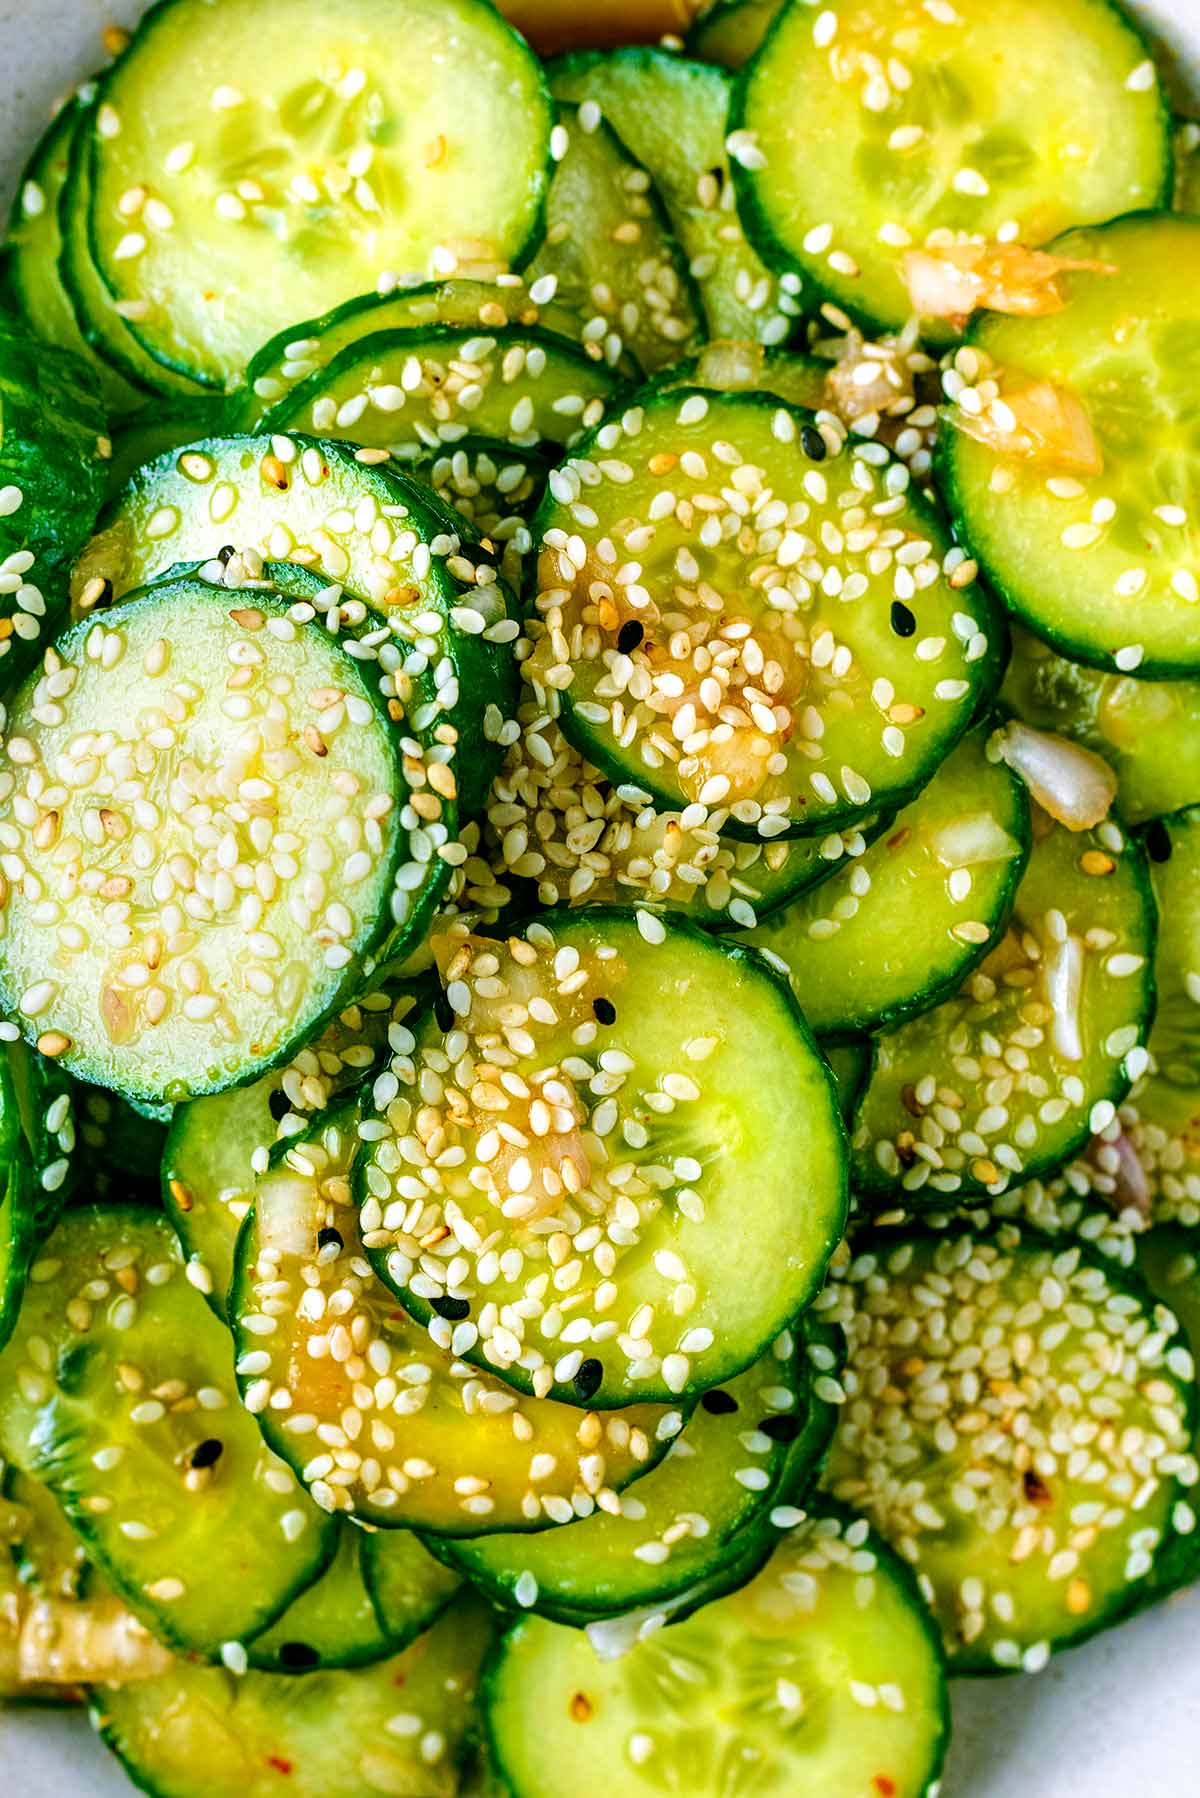 Sesame seeds sprinkled over cucumber slices.